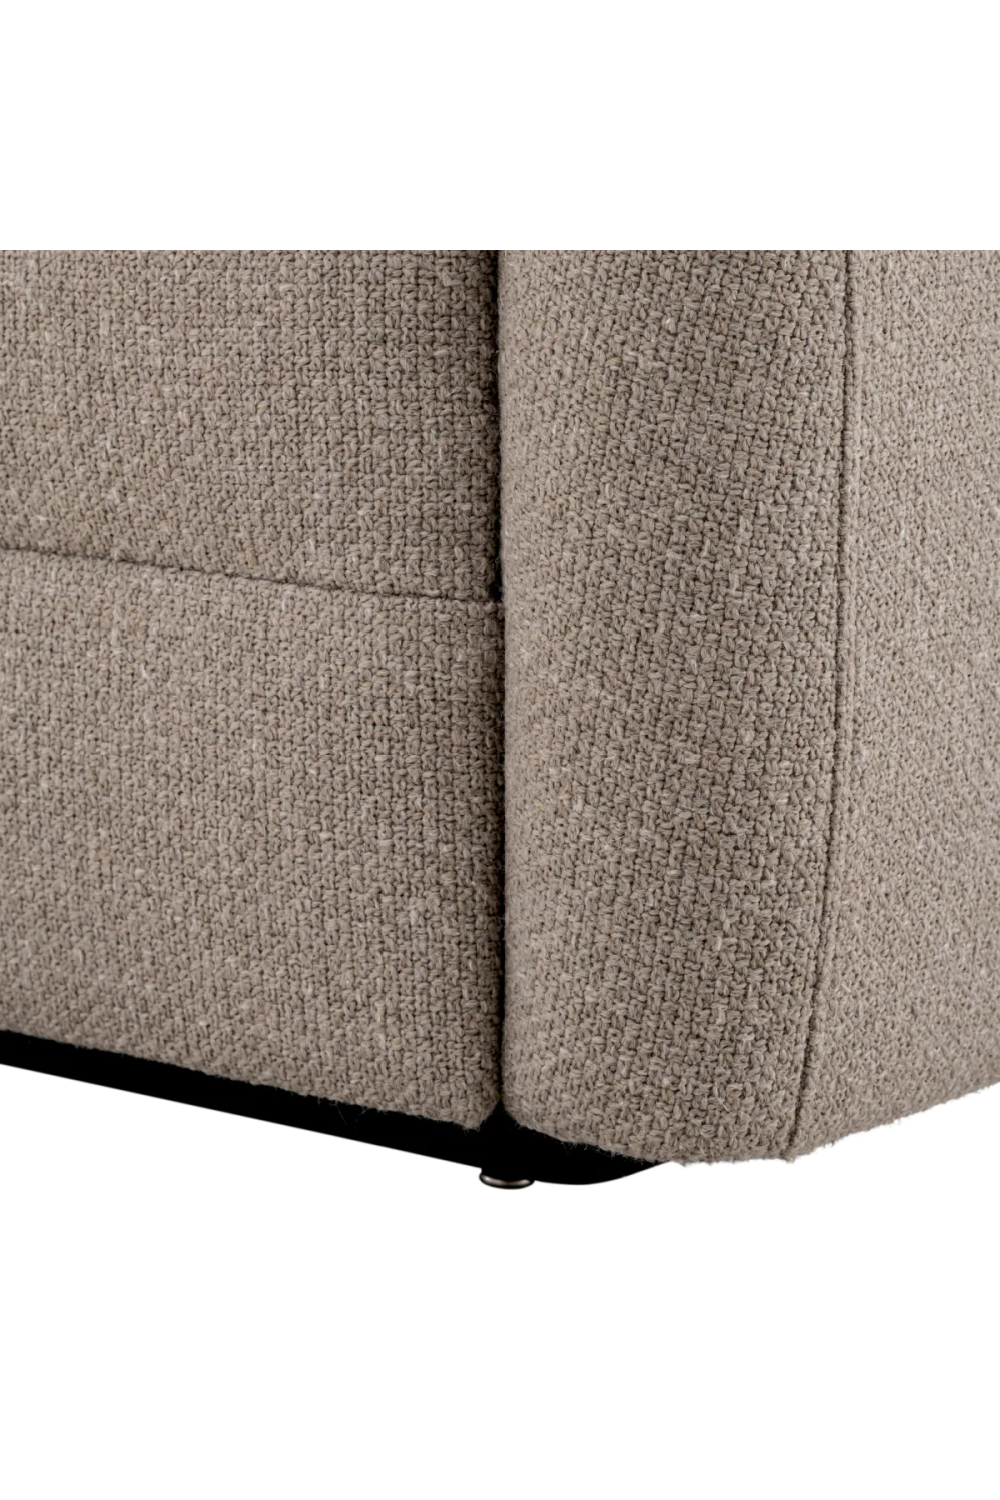 Gray Modern Sofa | Eichholtz Divisadero | Oroa.com